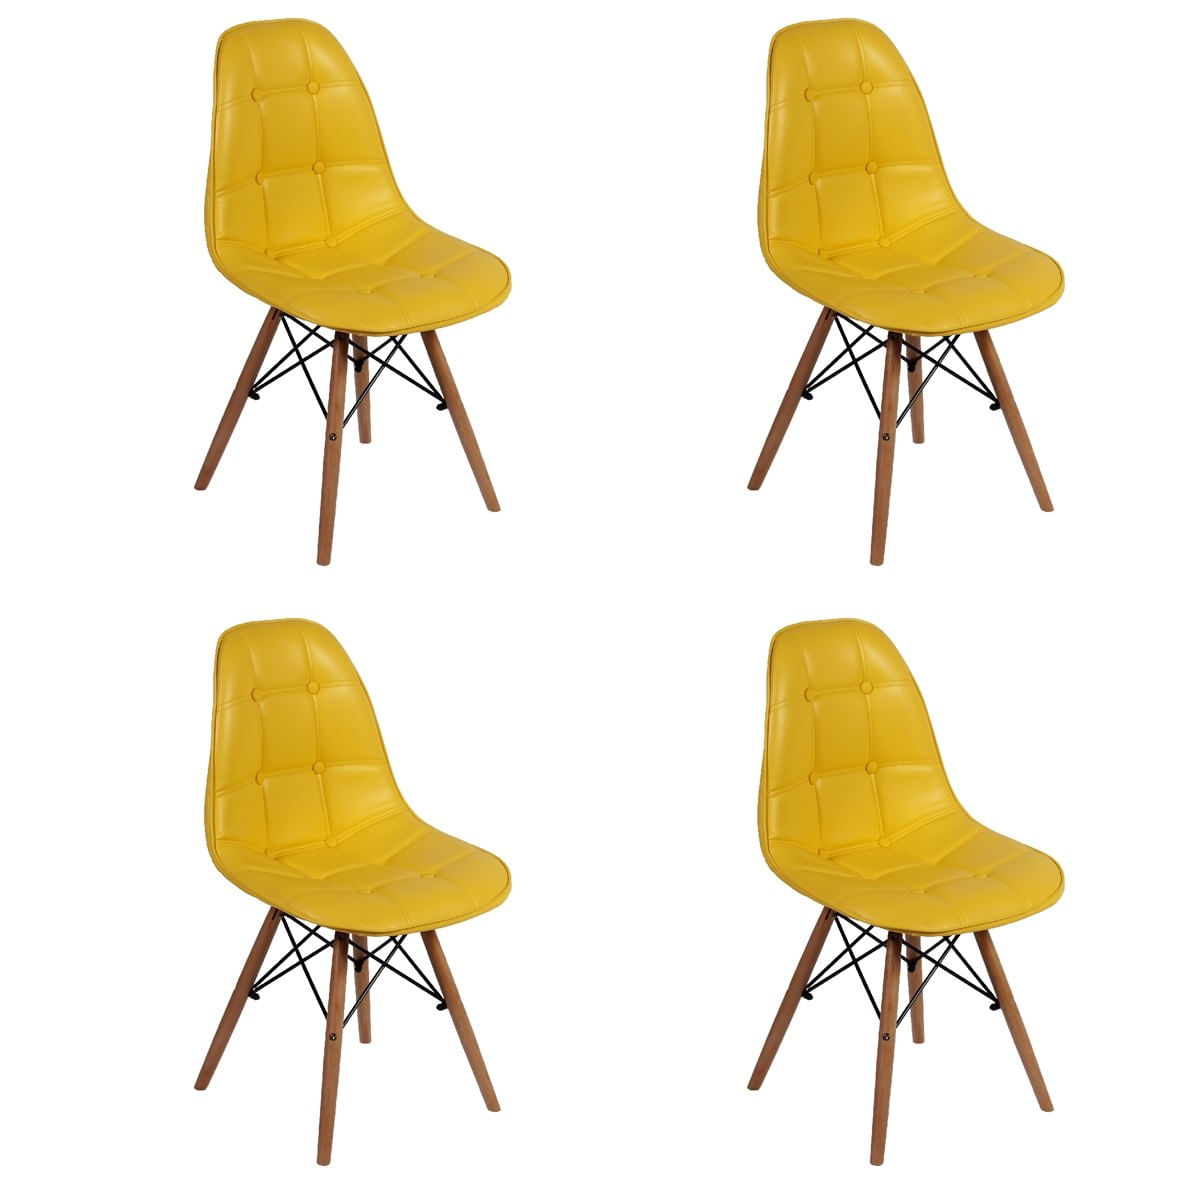 Menor preço em Conjunto 4 Cadeiras Dkr Charles Eames Wood Estofada Botonê - Amarela